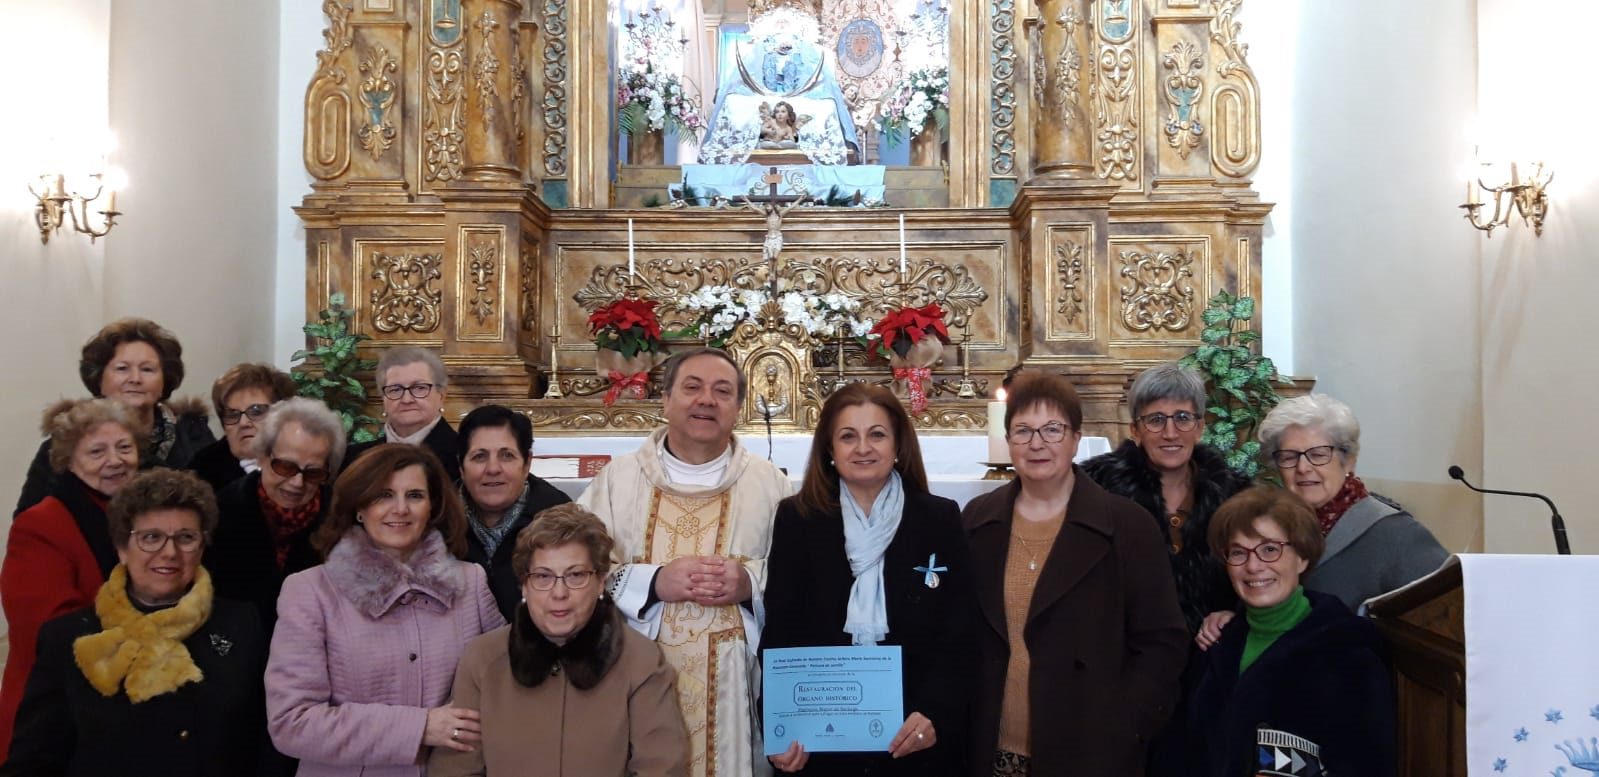 La Cofradía de La Asunción realiza una donación para la restauración del órgano